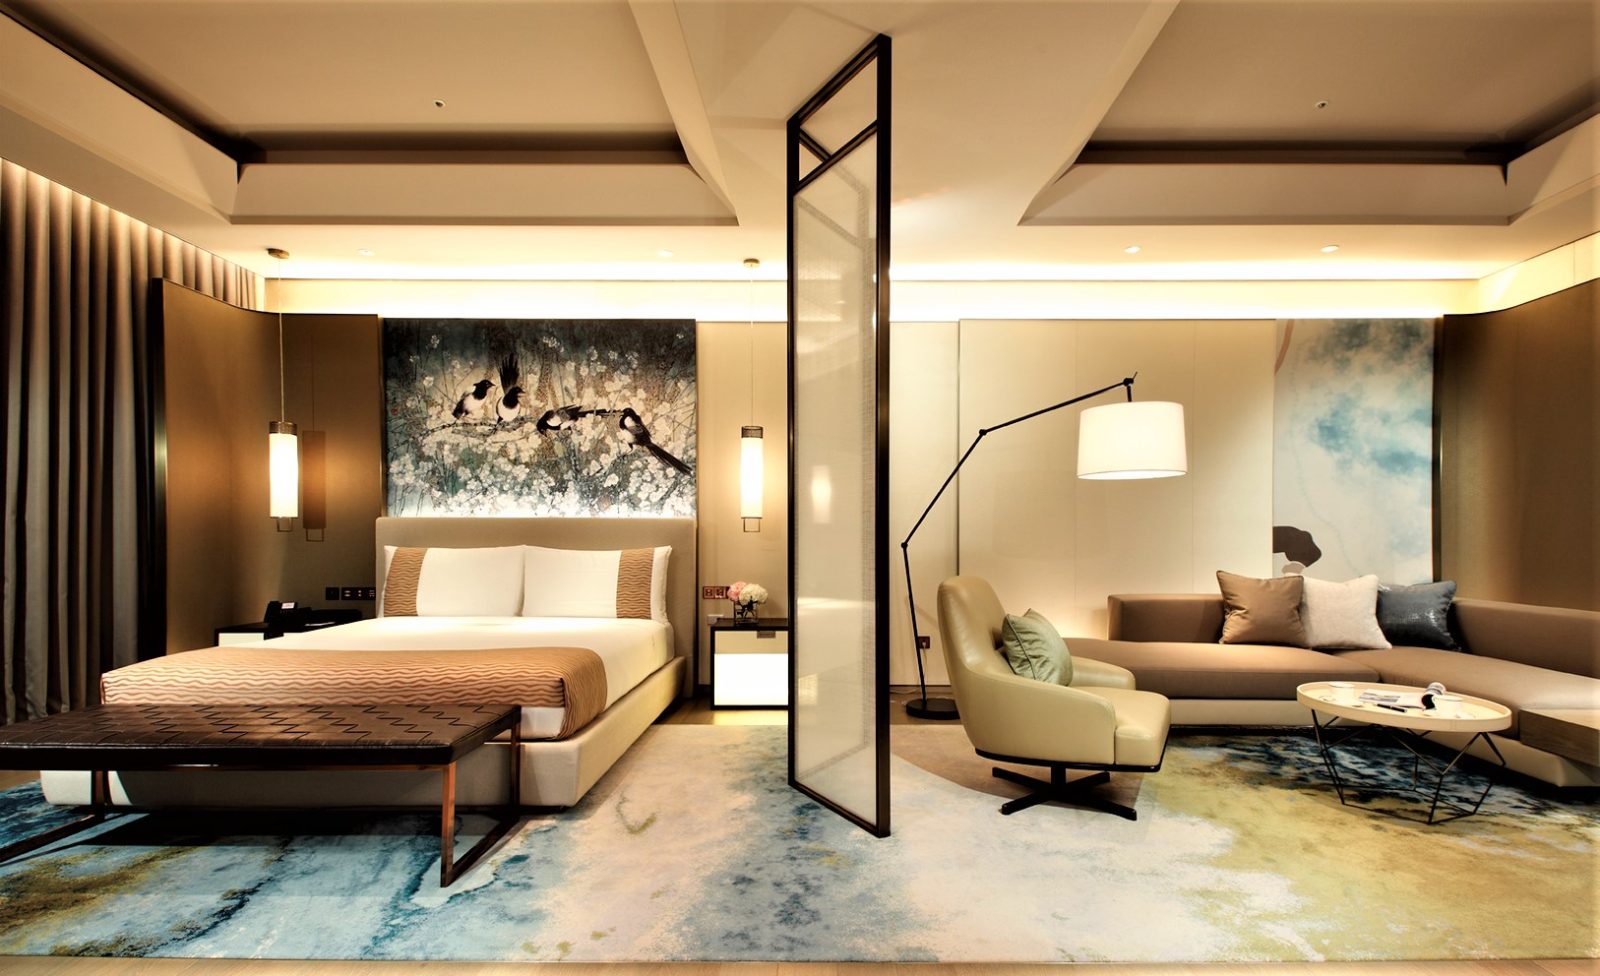 台北美福推出「甜蜜微醺」，米其林推薦頂級客房。照片堤供/台北美福大飯店